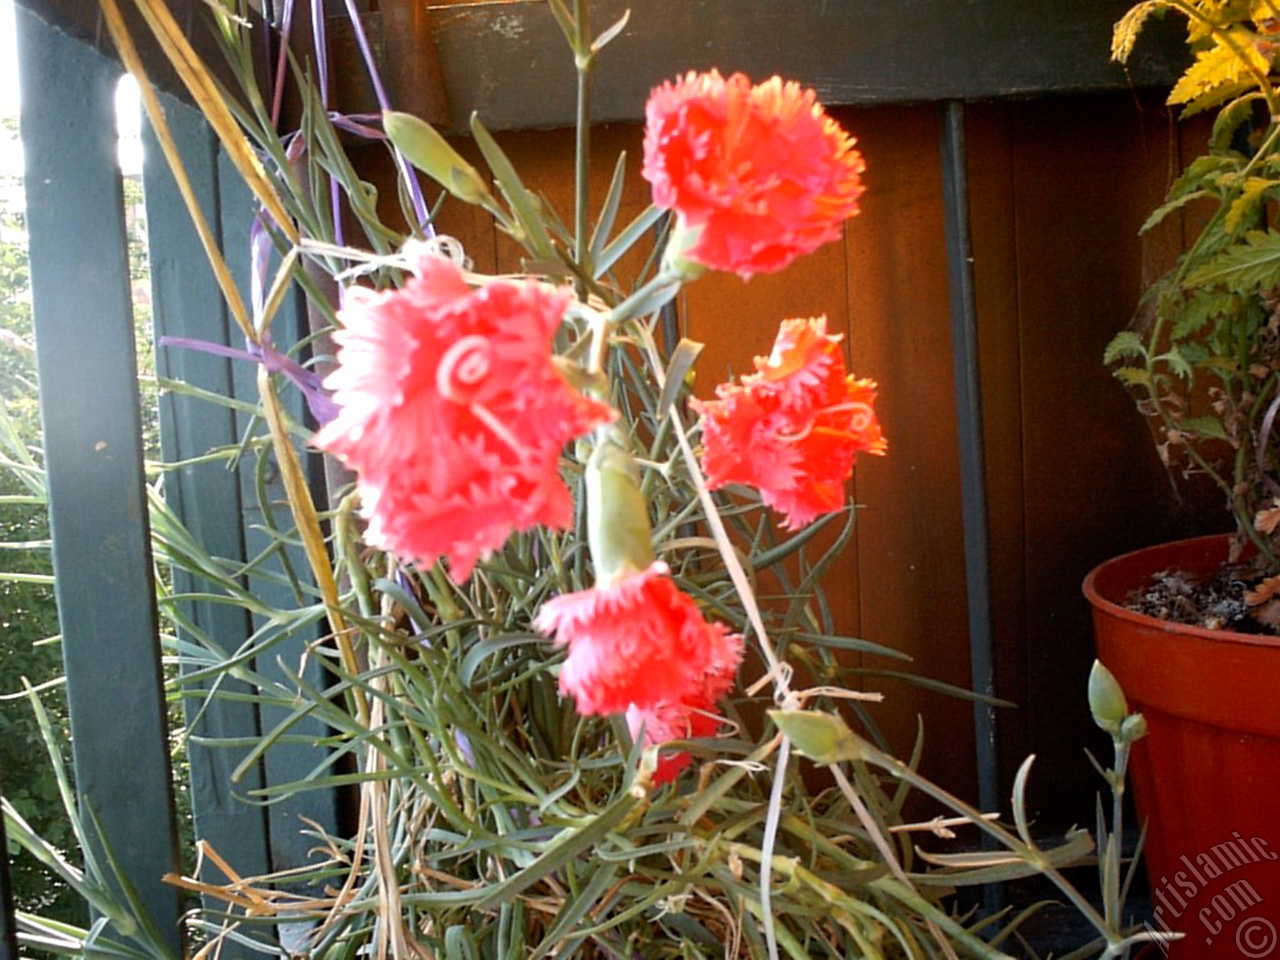 Red color Carnation -Clove Pink- flower.
